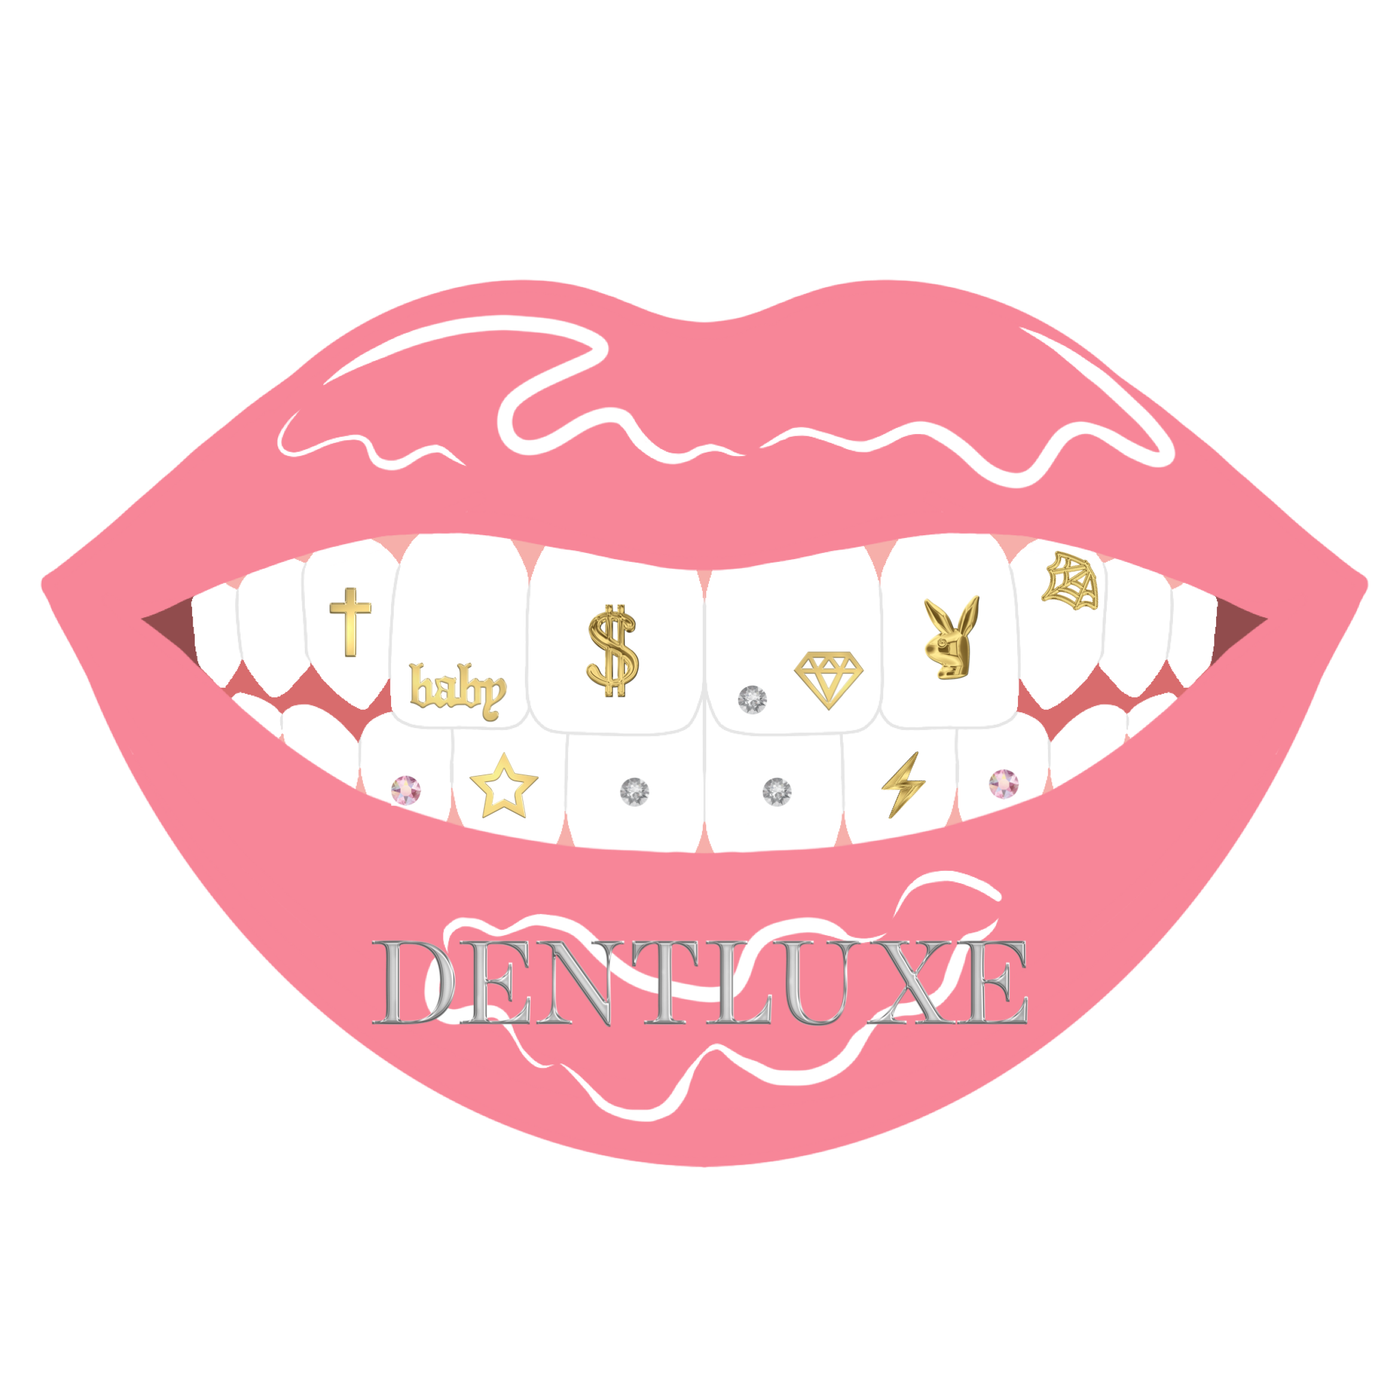 Tooth Gem Design Mouth Cards